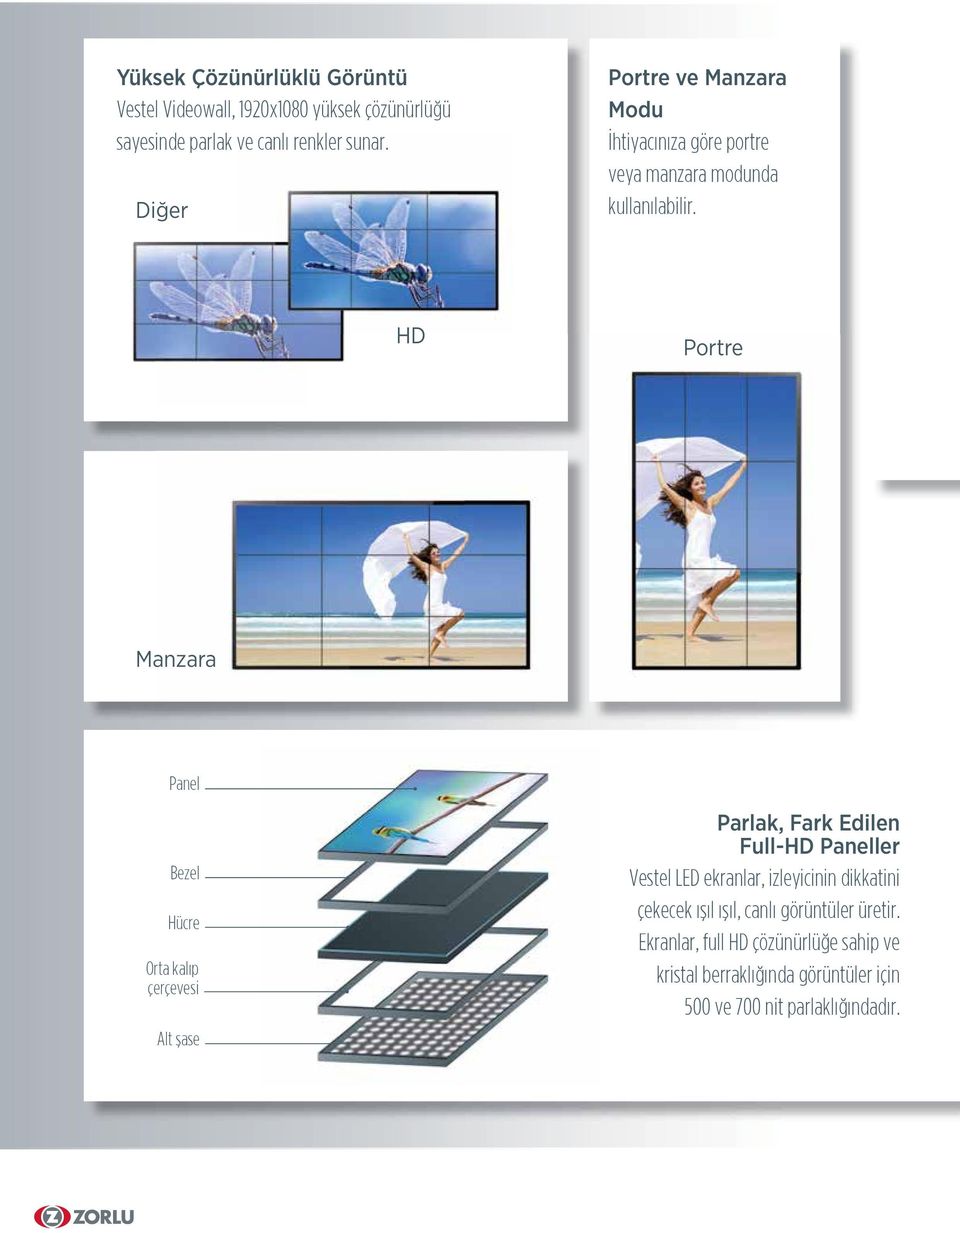 HD Portre Manzara Panel Bezel Hücre Orta kalıp çerçevesi Alt şase Parlak, Fark Edilen Full-HD Paneller Vestel LED ekranlar,